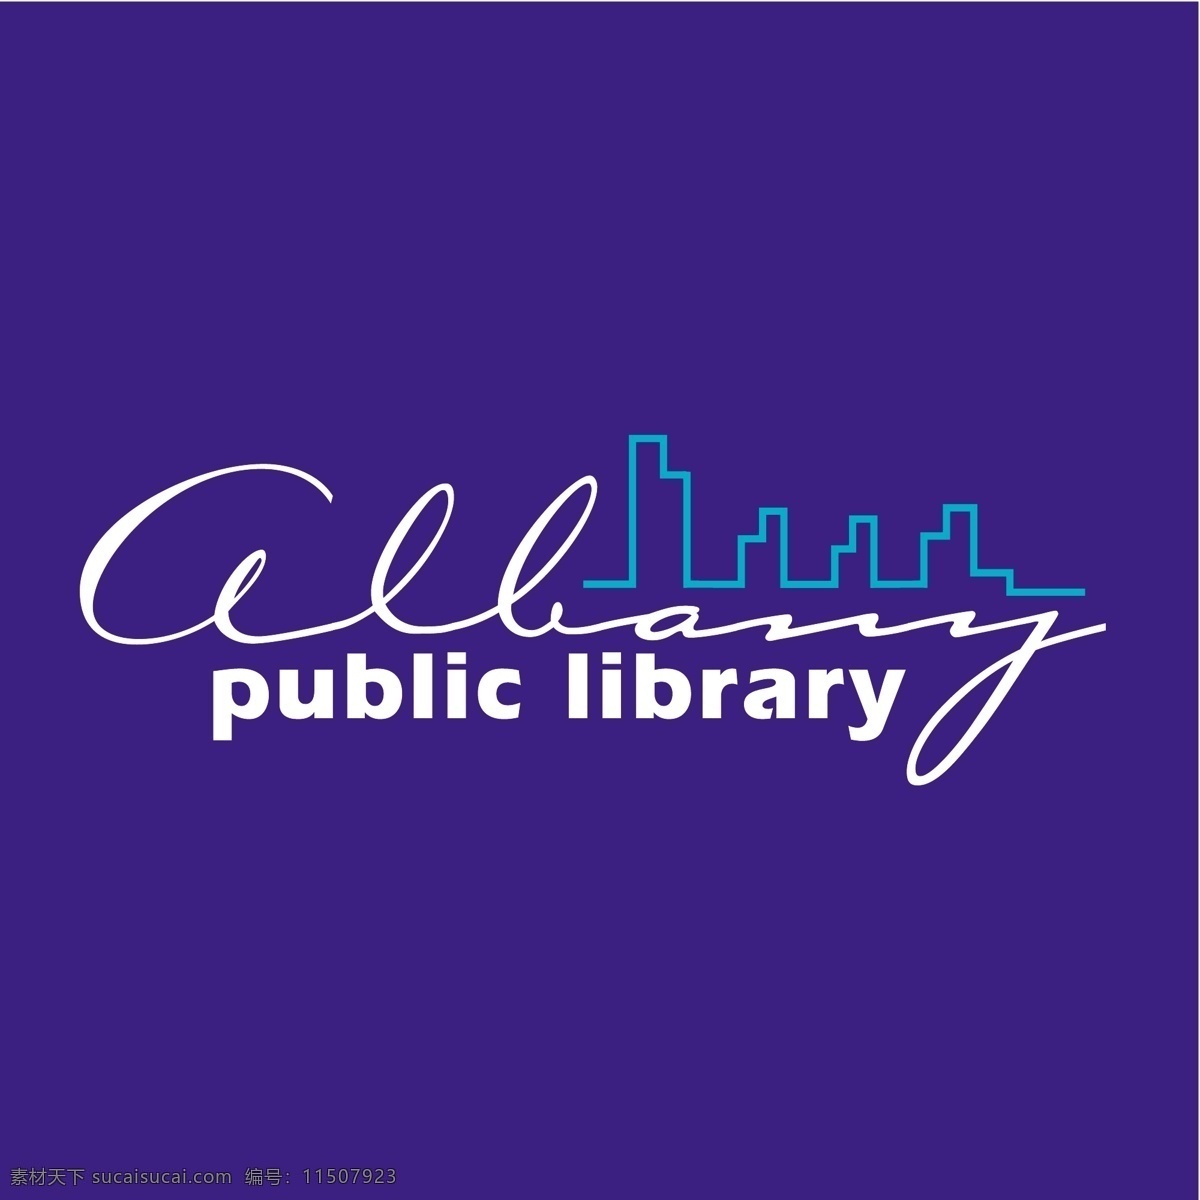 奥尔巴尼 公共 图书馆 标识 图形矢量 公众 公共图书馆 向量 标志 公共载体 公共艺术 公共形象 免费下载矢量 矢量图 建筑家居